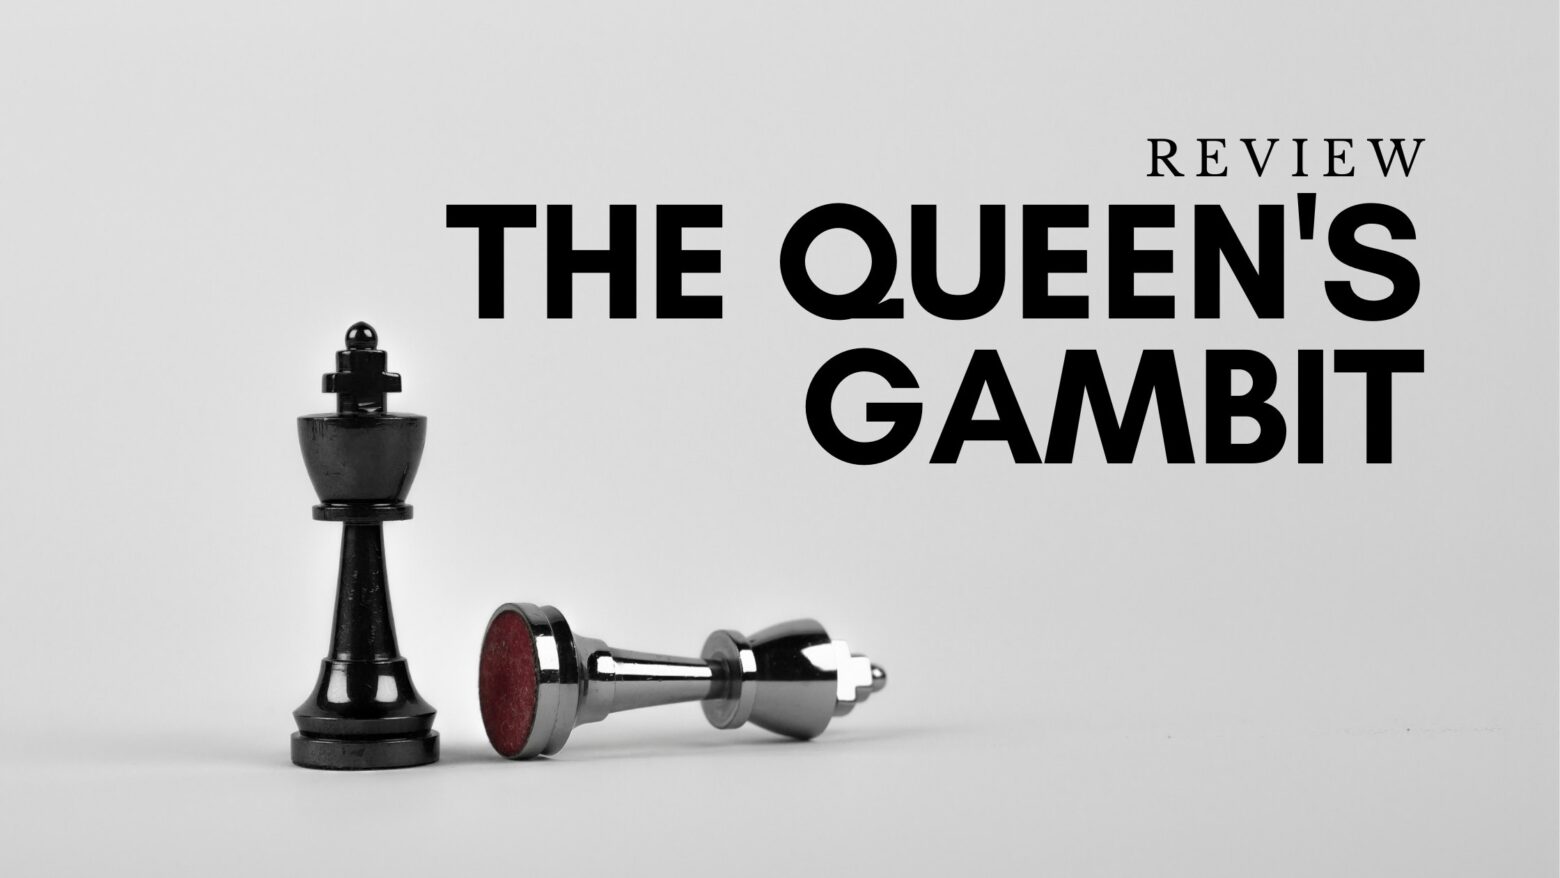 The Queen’s Gambit Review dari Sudut Pandang Seorang Mantan Pecatur